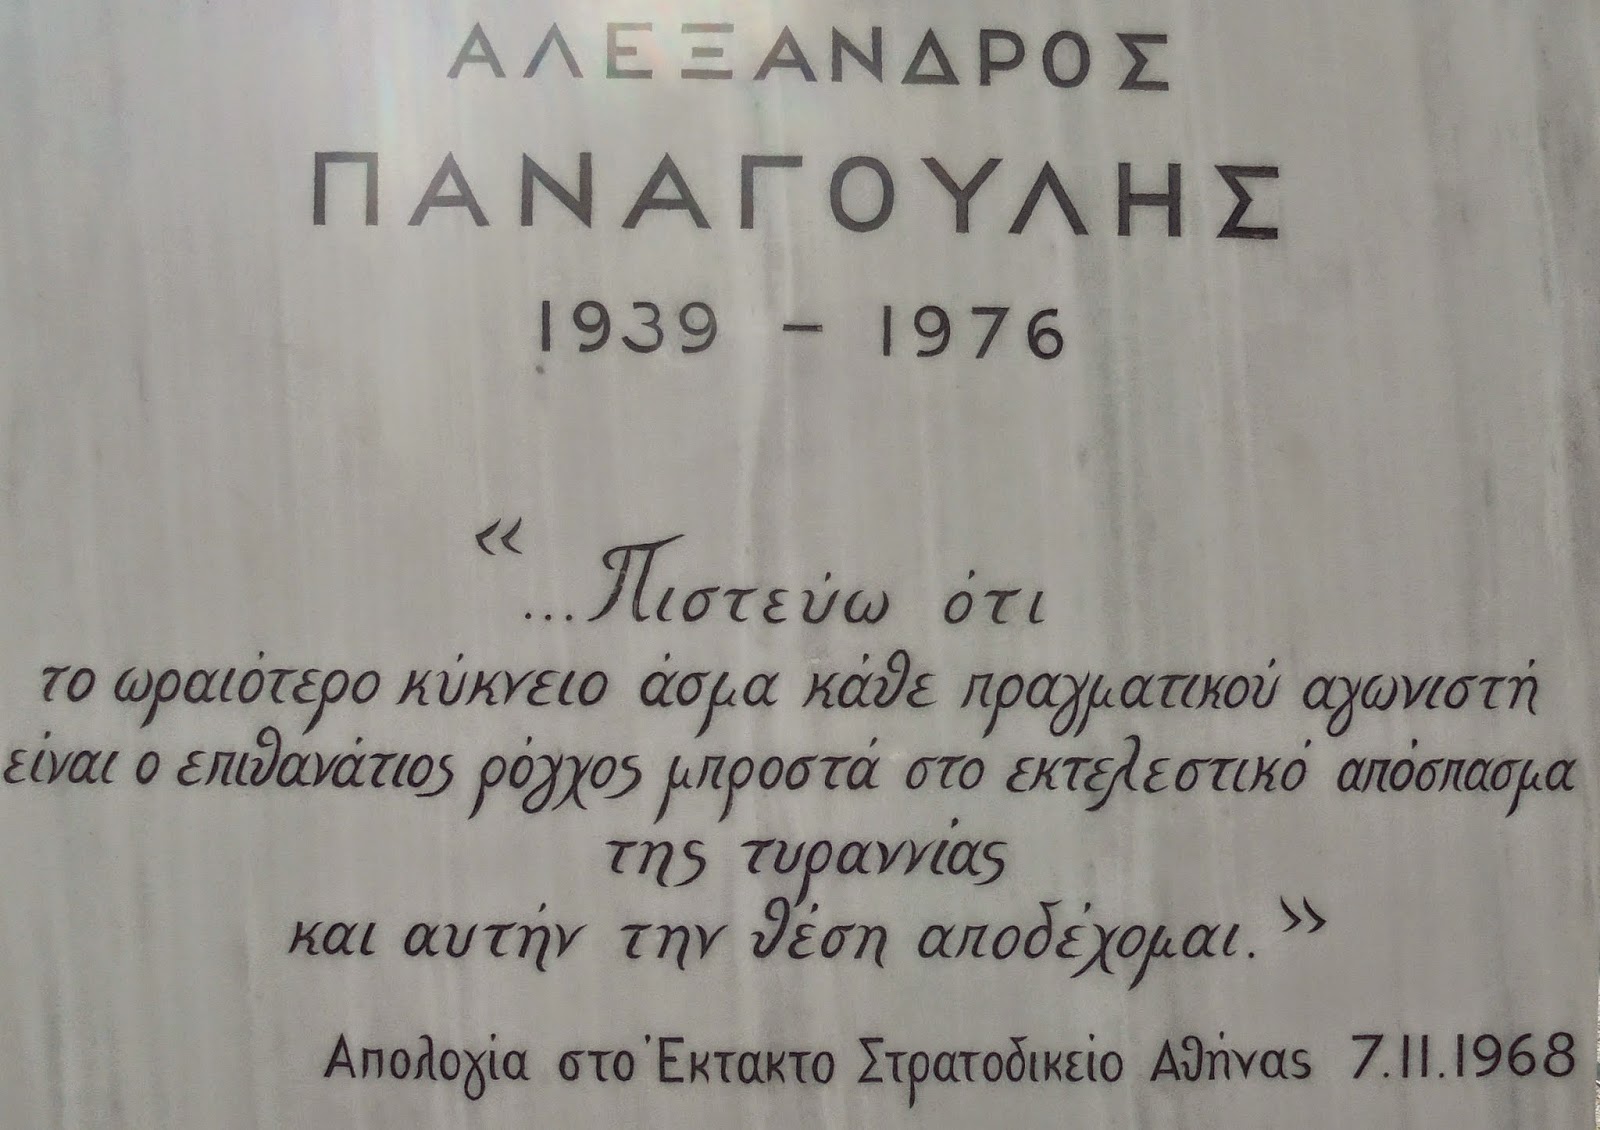 ο ανδριάντας του Αλέξανδρου Παναγούλη στην πλατεία Τερτσέτη των Αθηνών